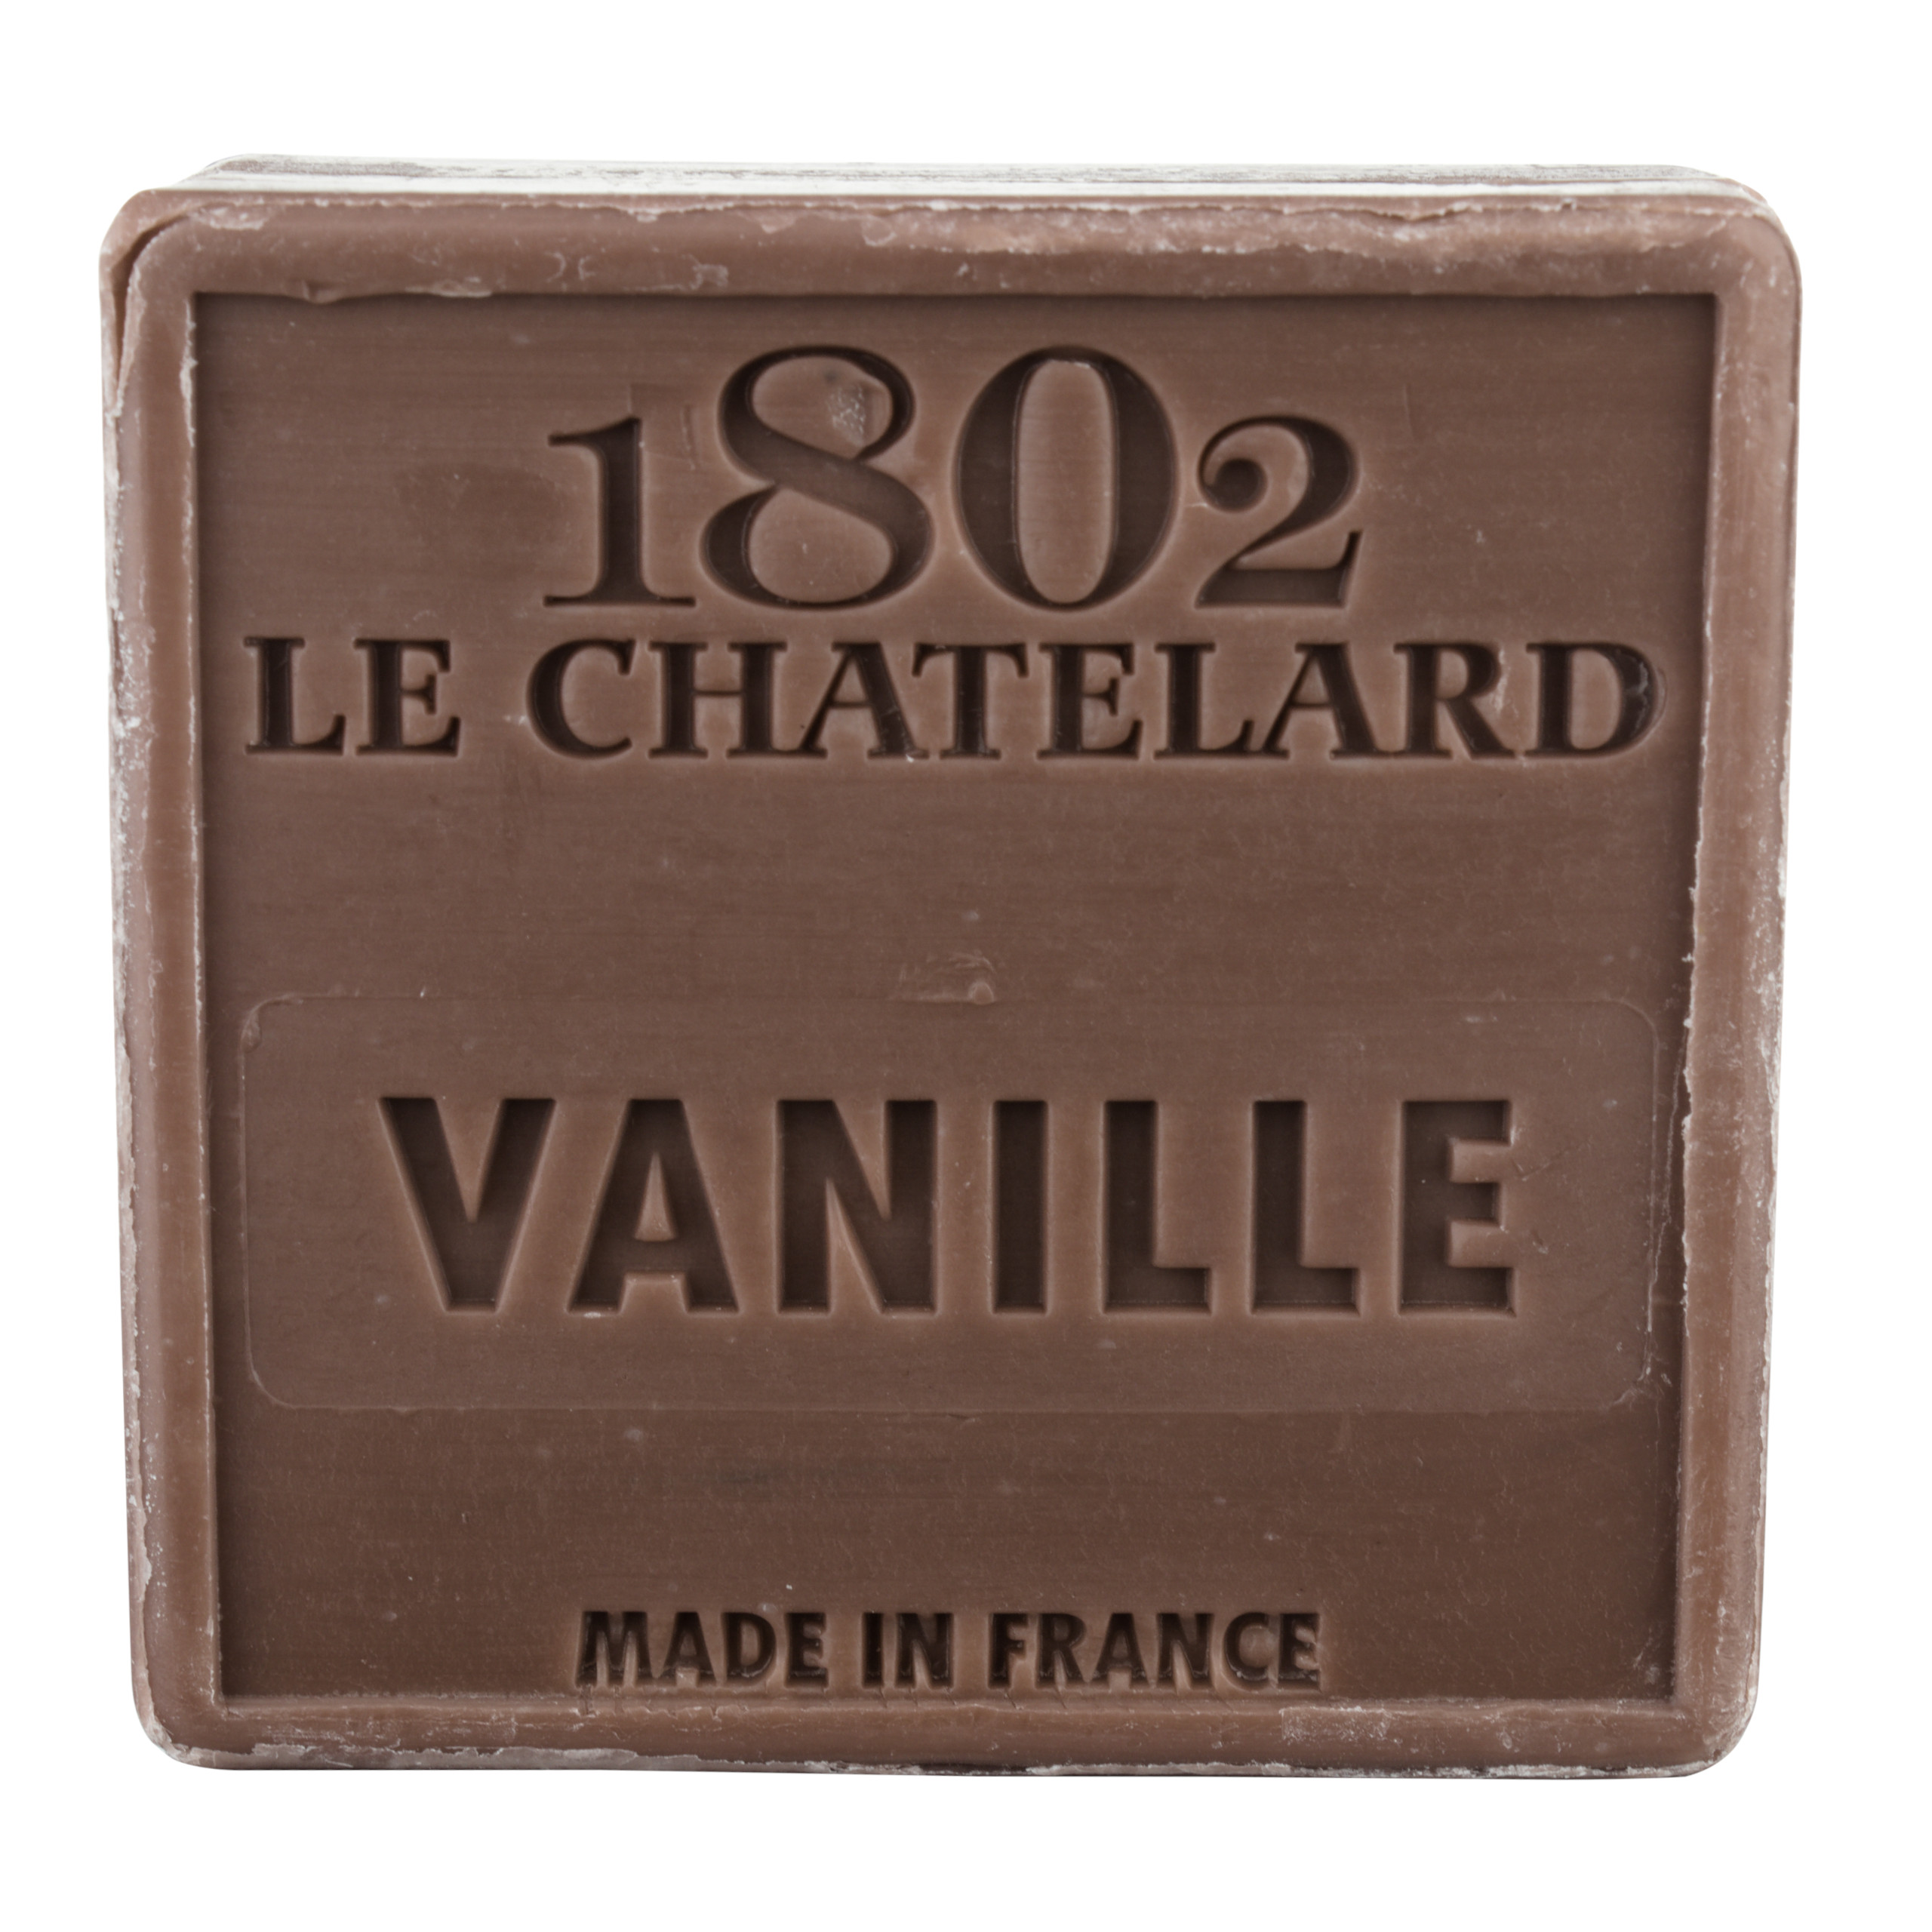 Mydło marsylskie Wanilia 100g Le Chatelard 1802 bez oleju palmowego